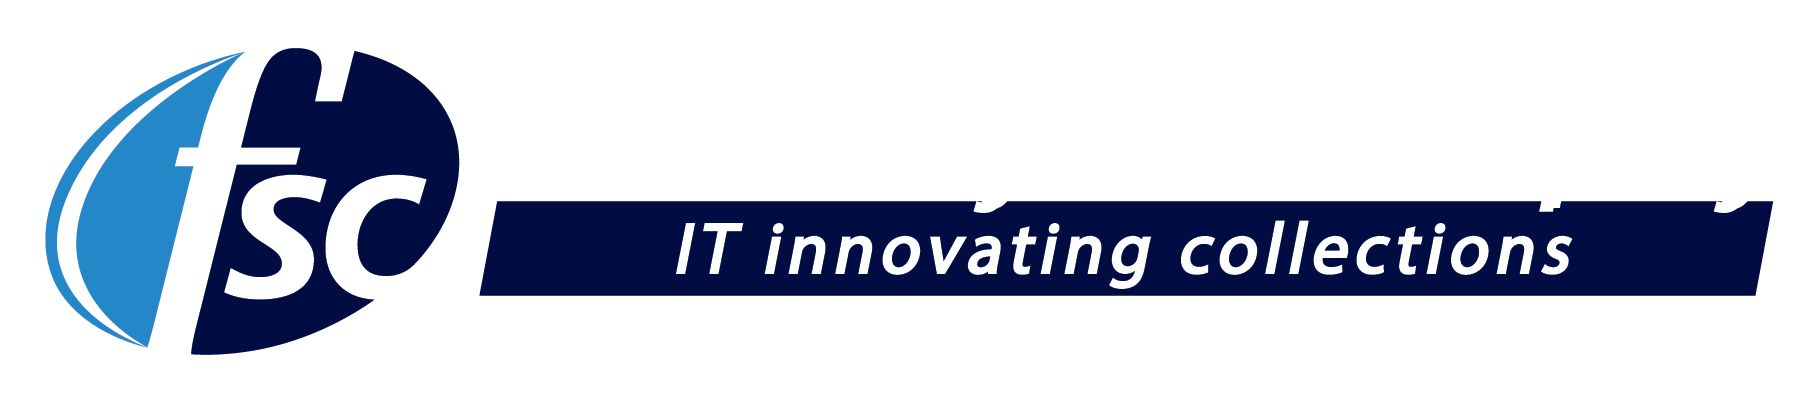 Financial Systems Company logo